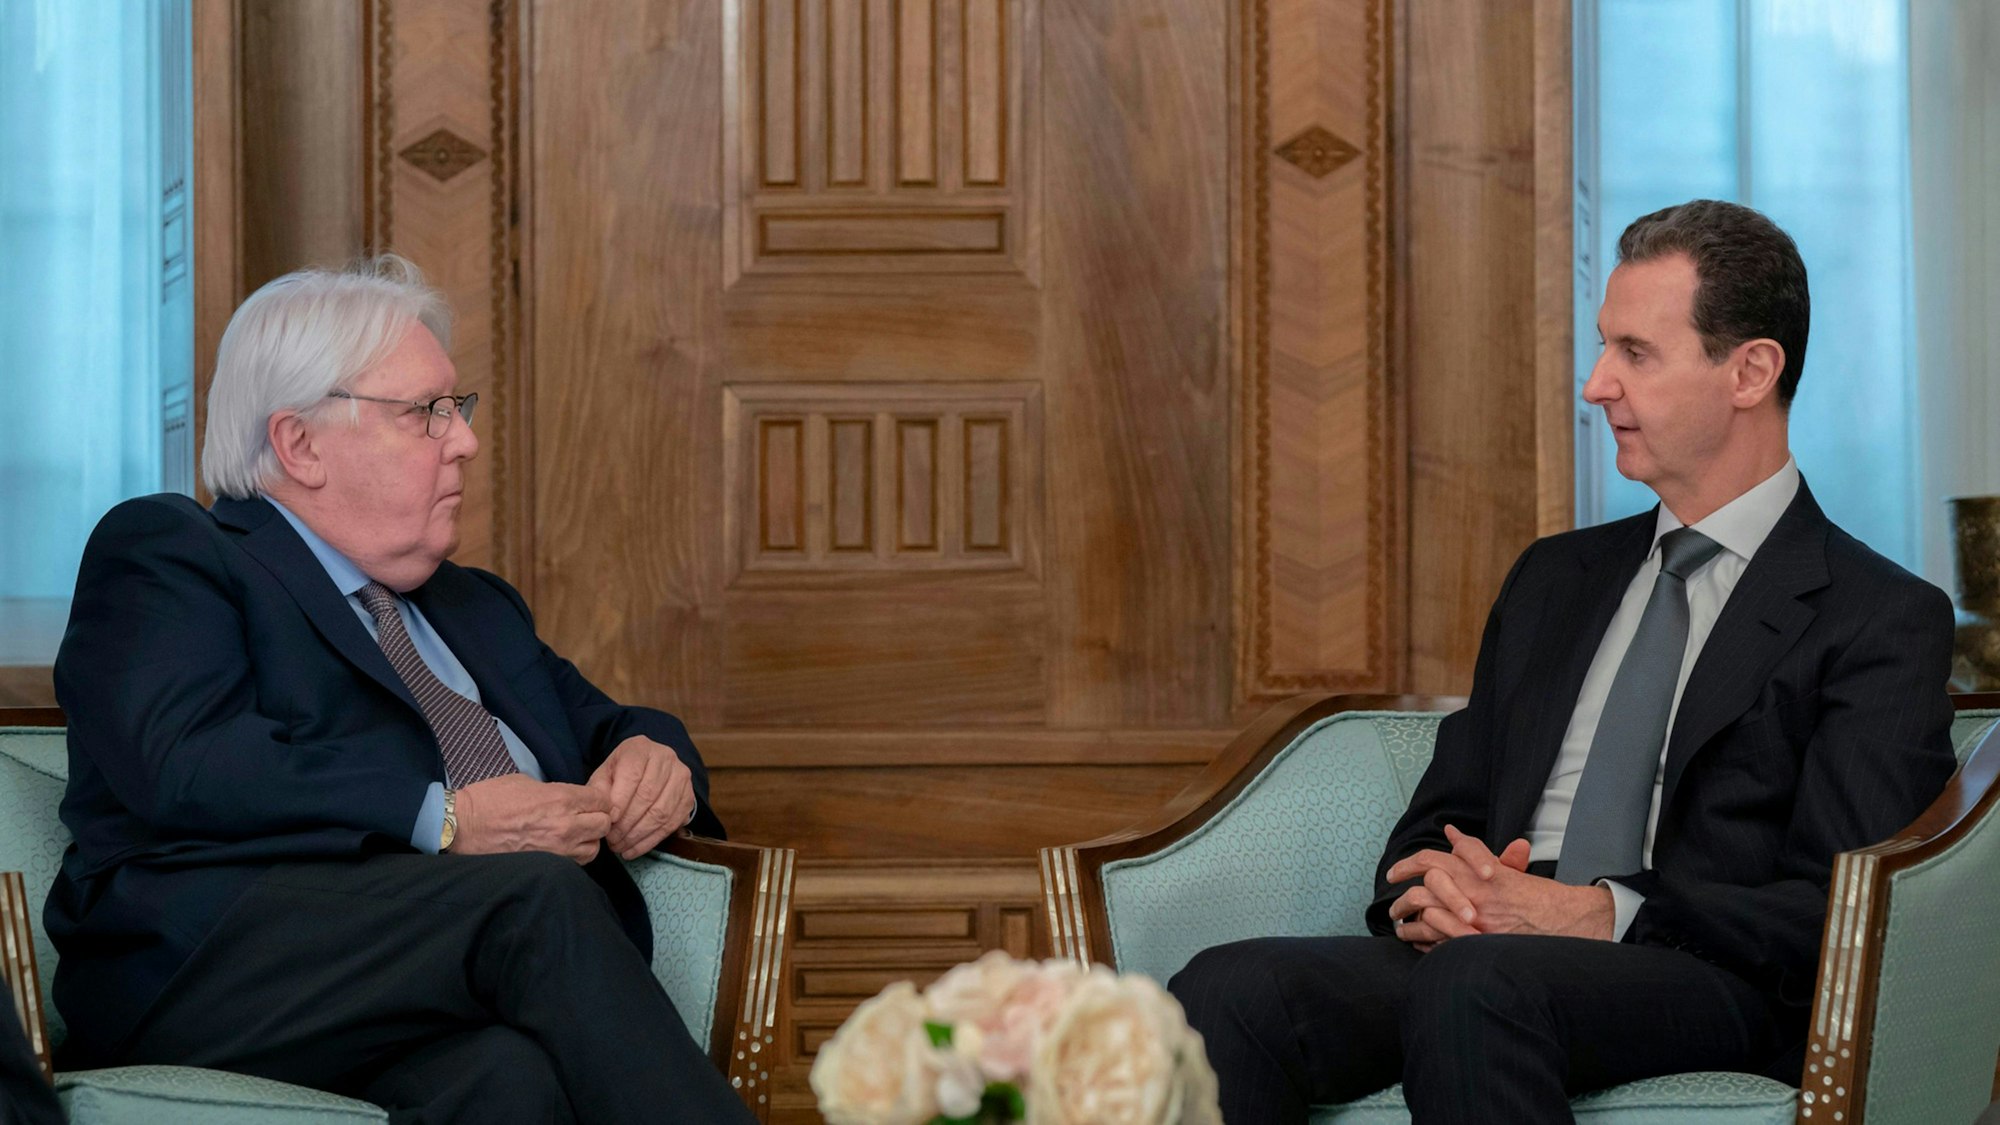 Syrien, Damaskus: Auf diesem Foto, das auf der offiziellen Facebook-Seite der syrischen Präsidentschaft veröffentlicht wurde, trifft sich Baschar al-Assad (r), Präsident von Syrien, mit Martin Griffiths, UN-Nothilfekoordinator.